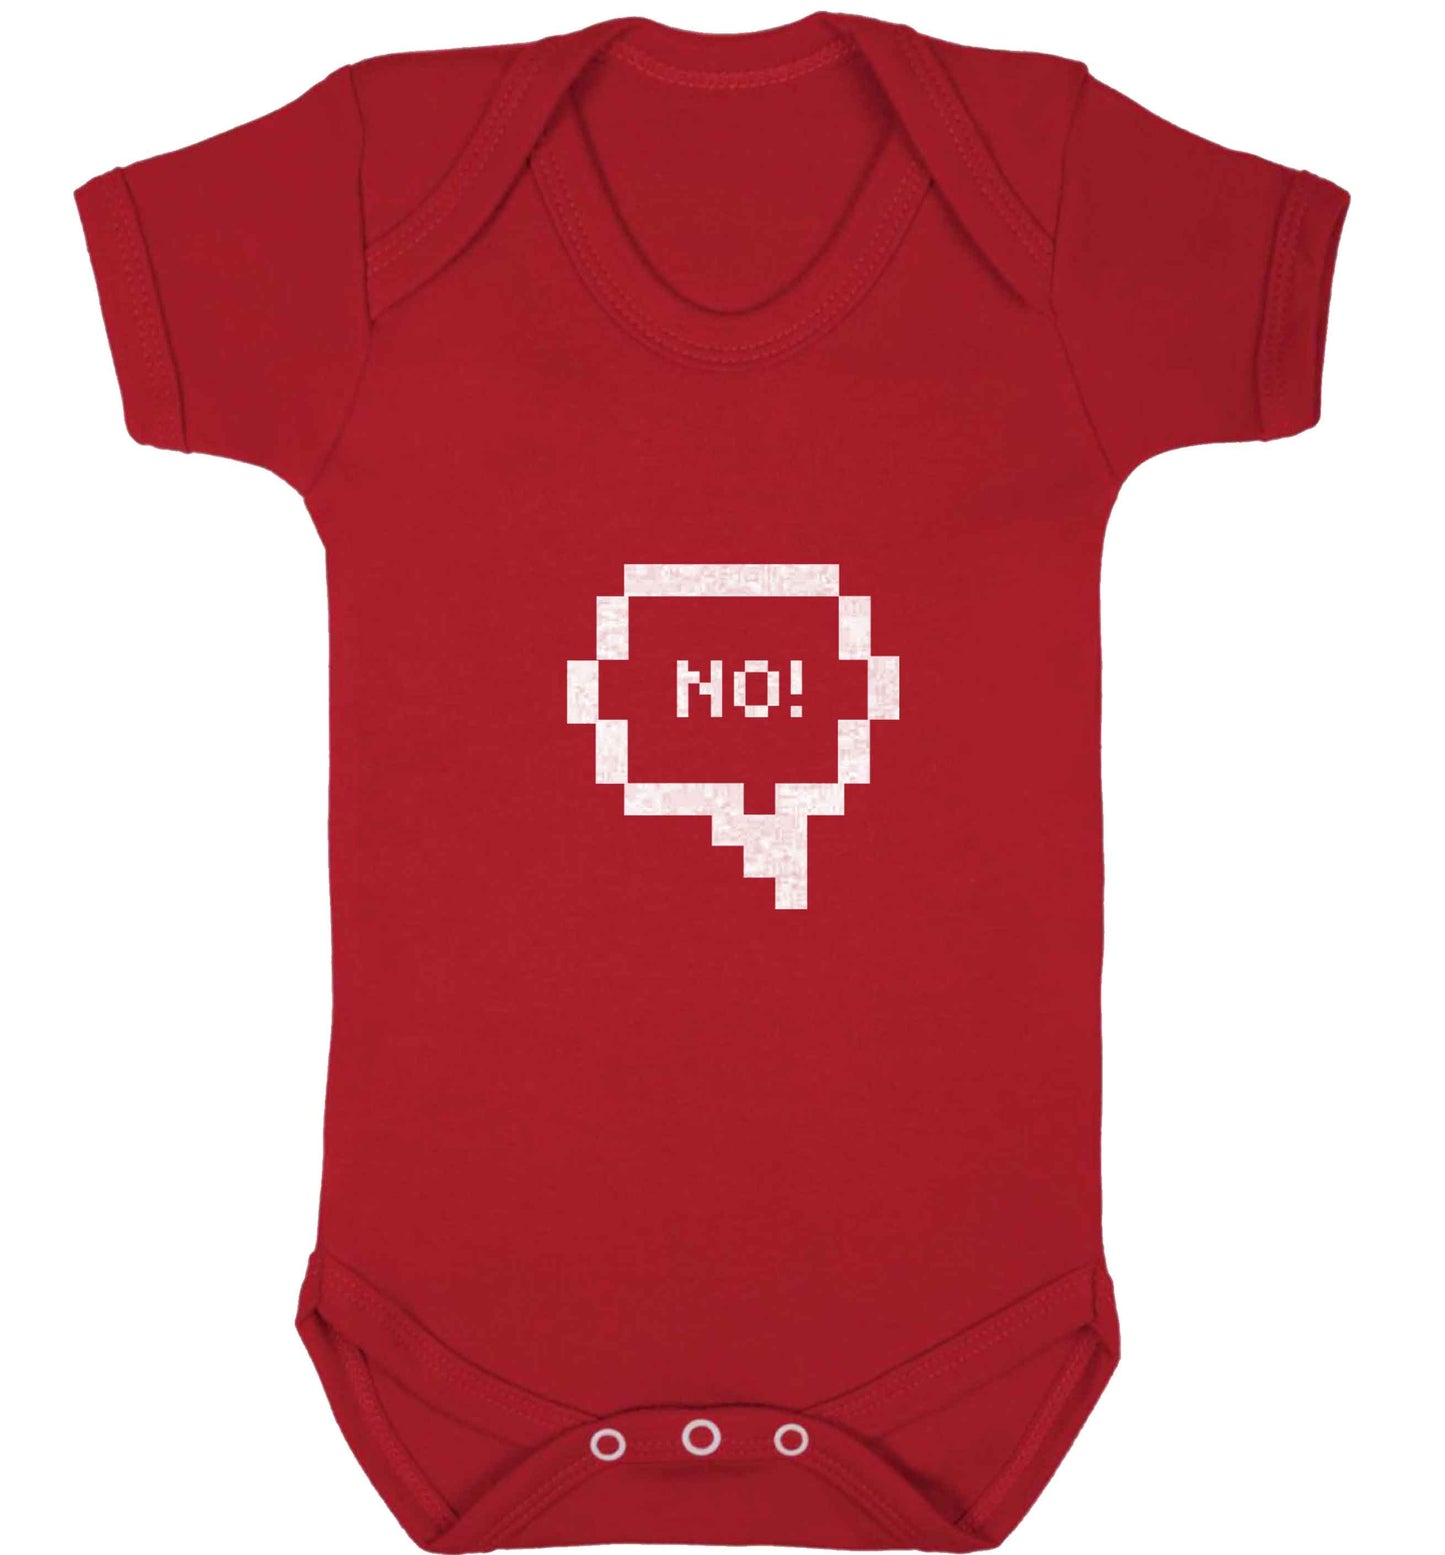 No baby vest red 18-24 months